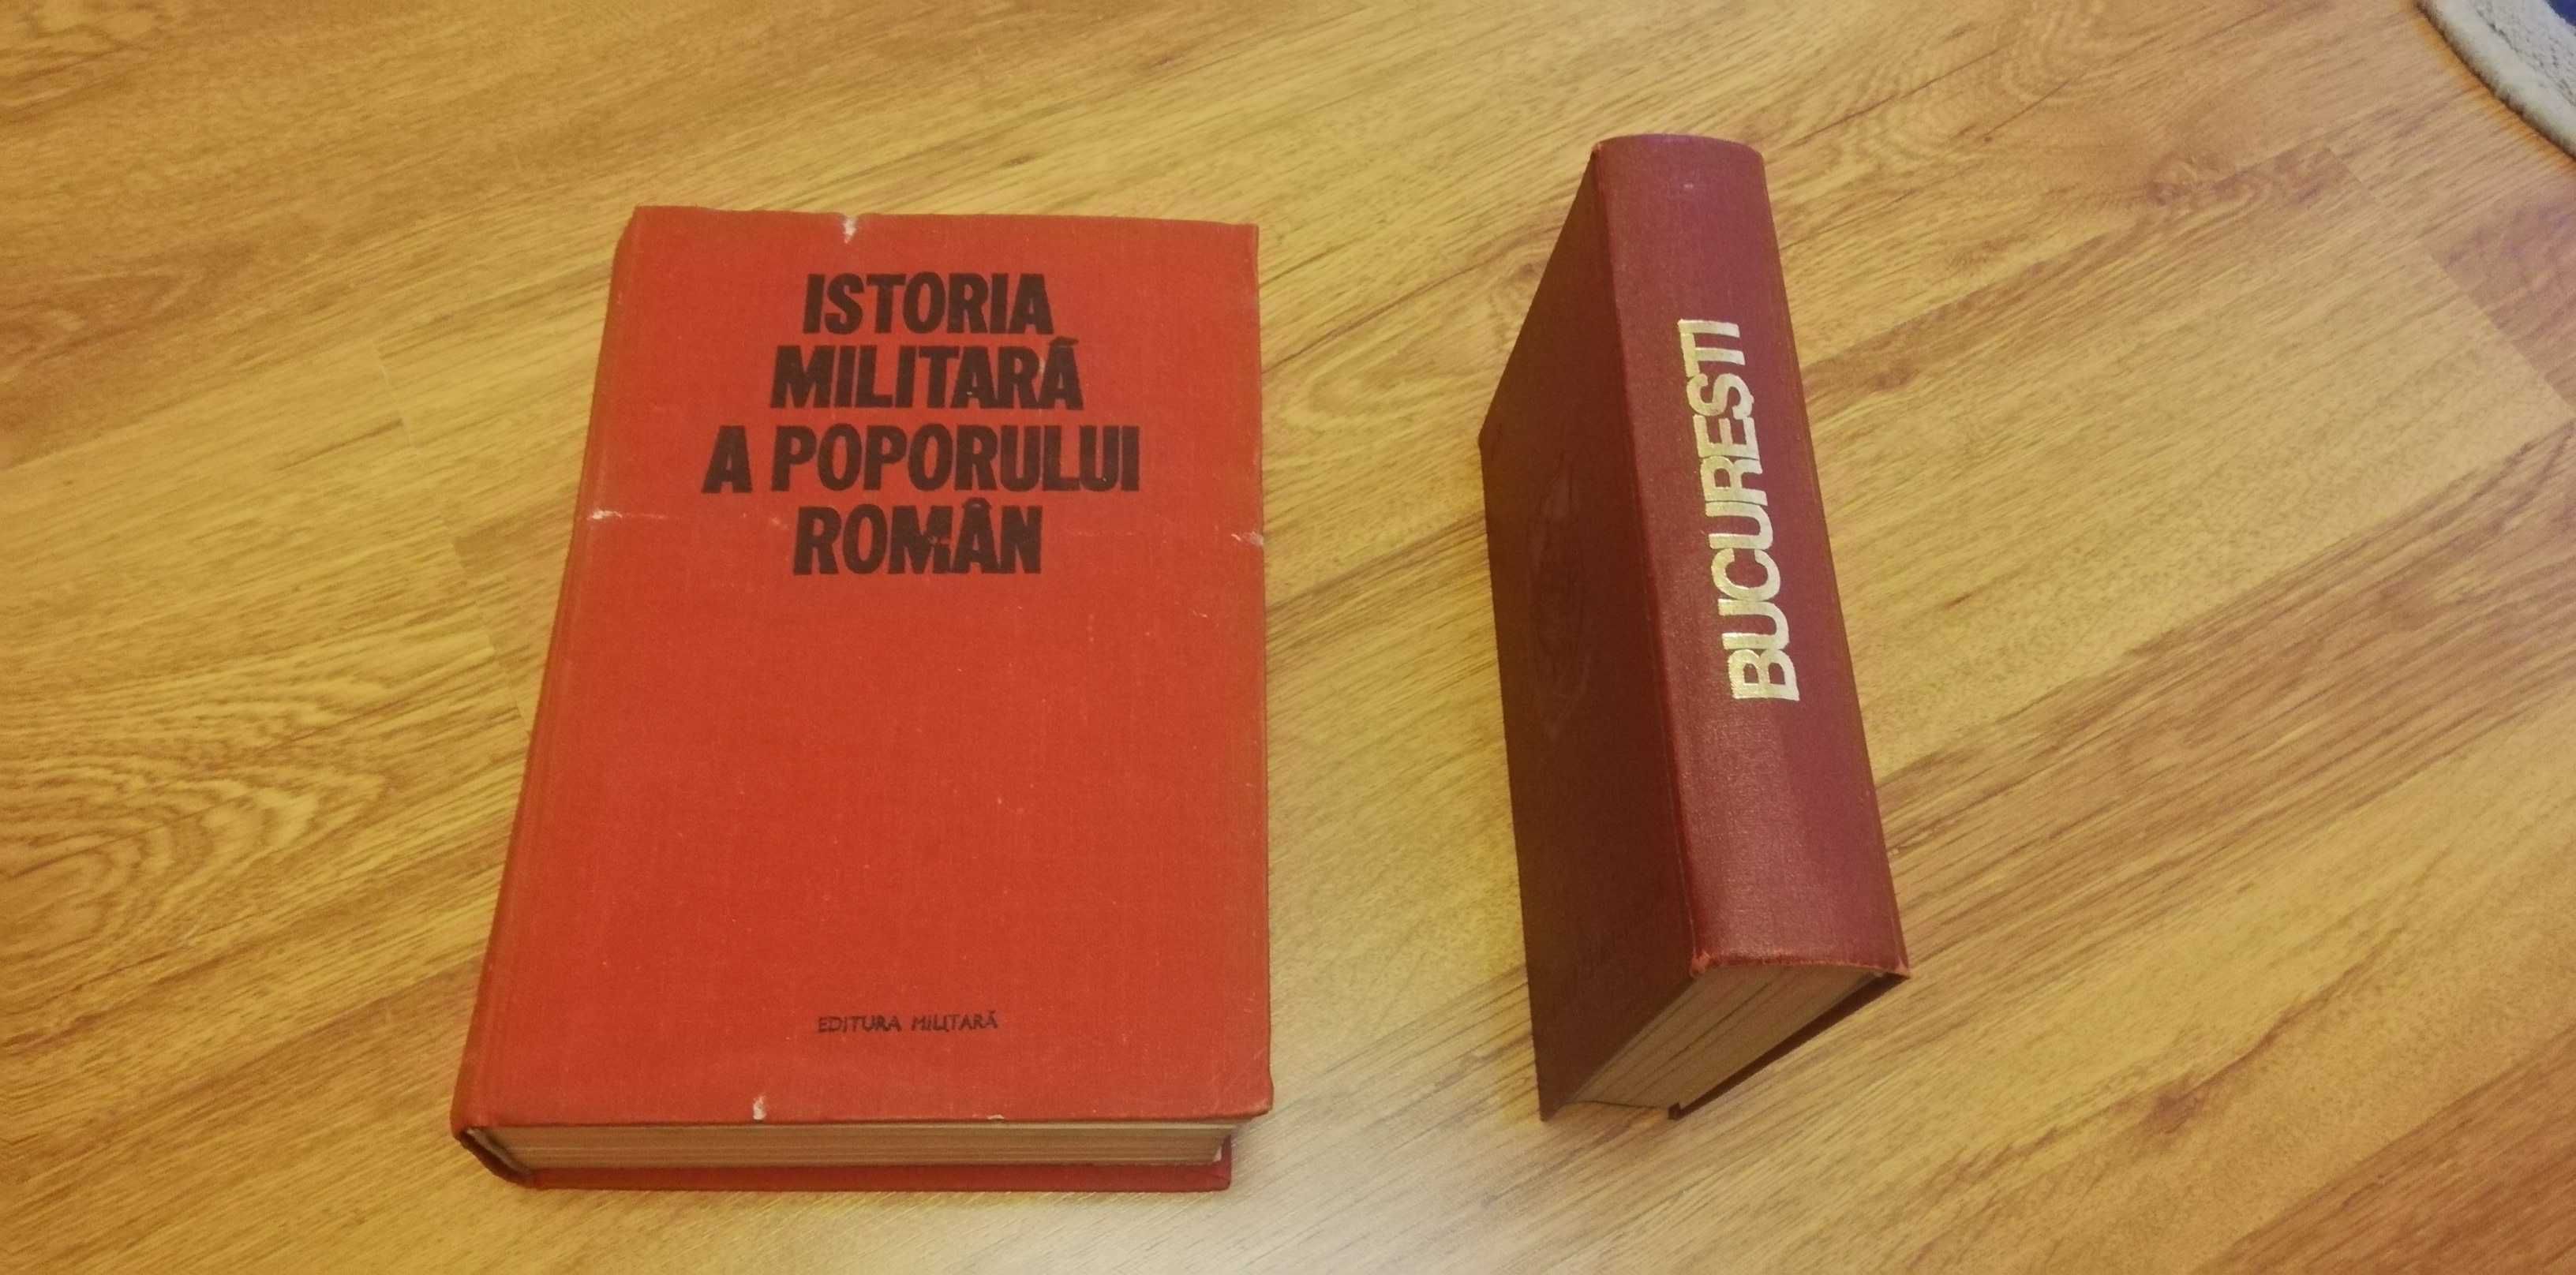 istoria militara a poporului roman si Bucuresti monografie 1985